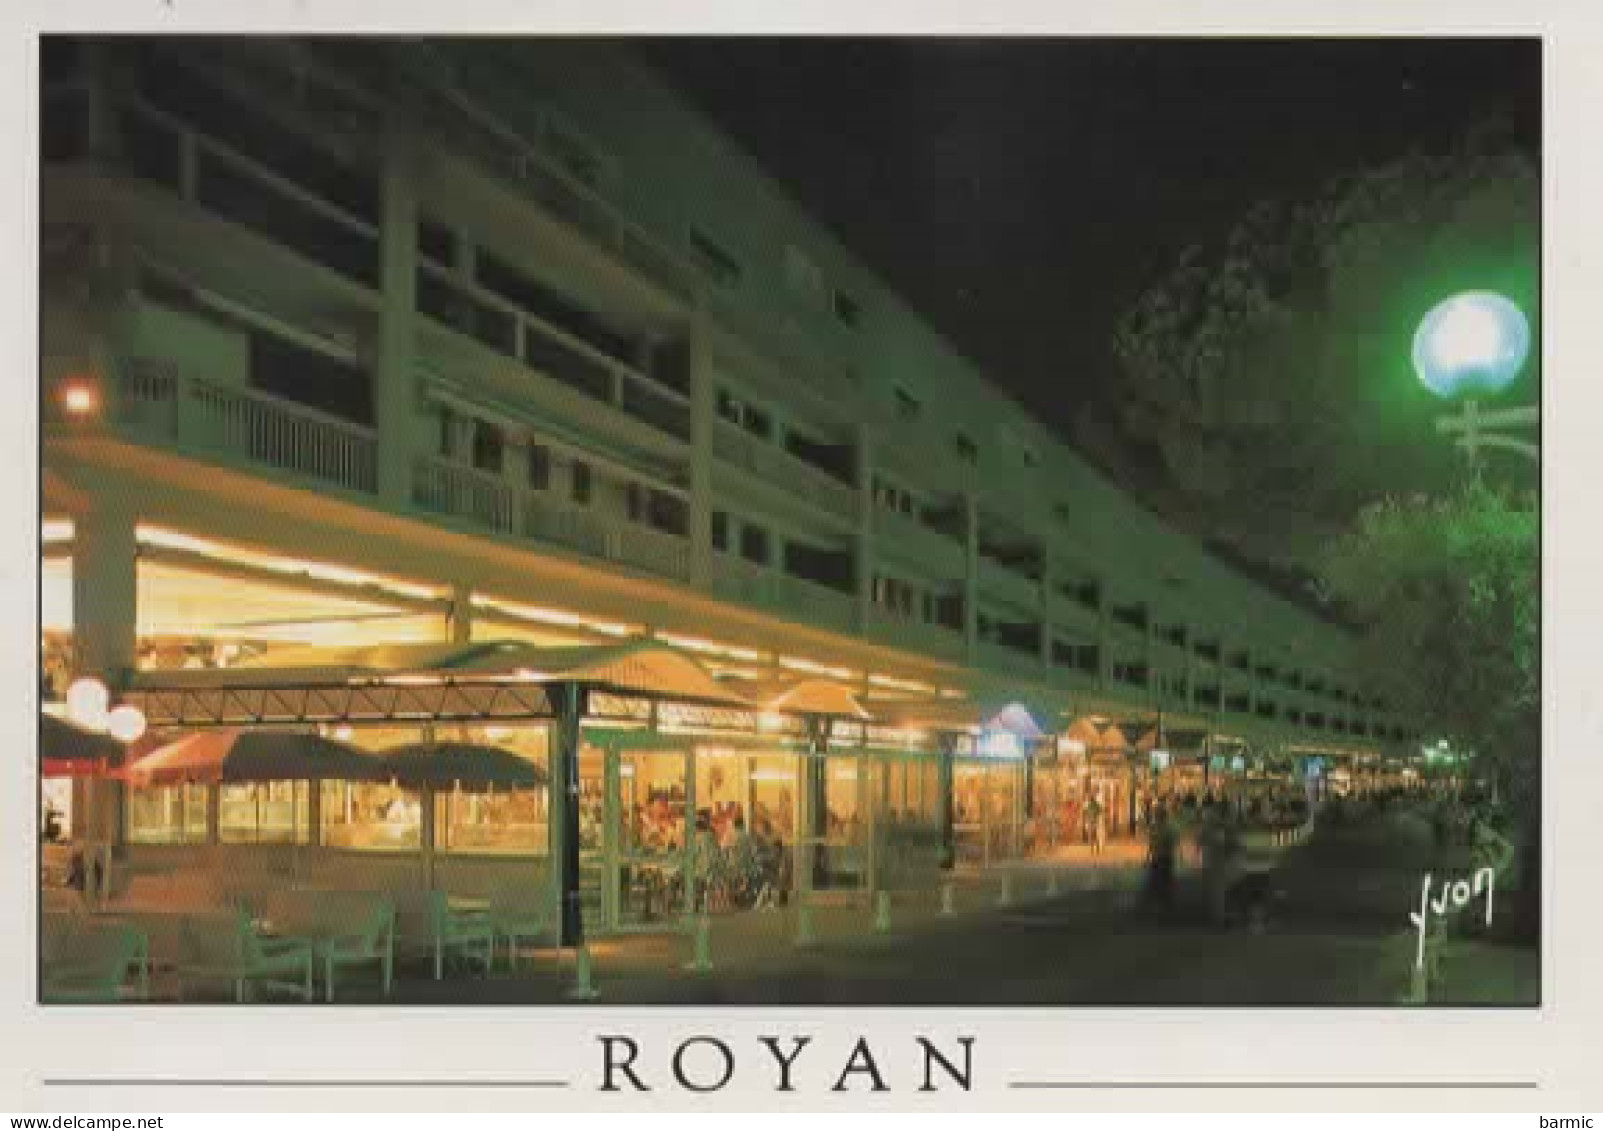 ROYAN, LE FRONT DE MER, LE SOIR COULEUR REF 16301 - Royan